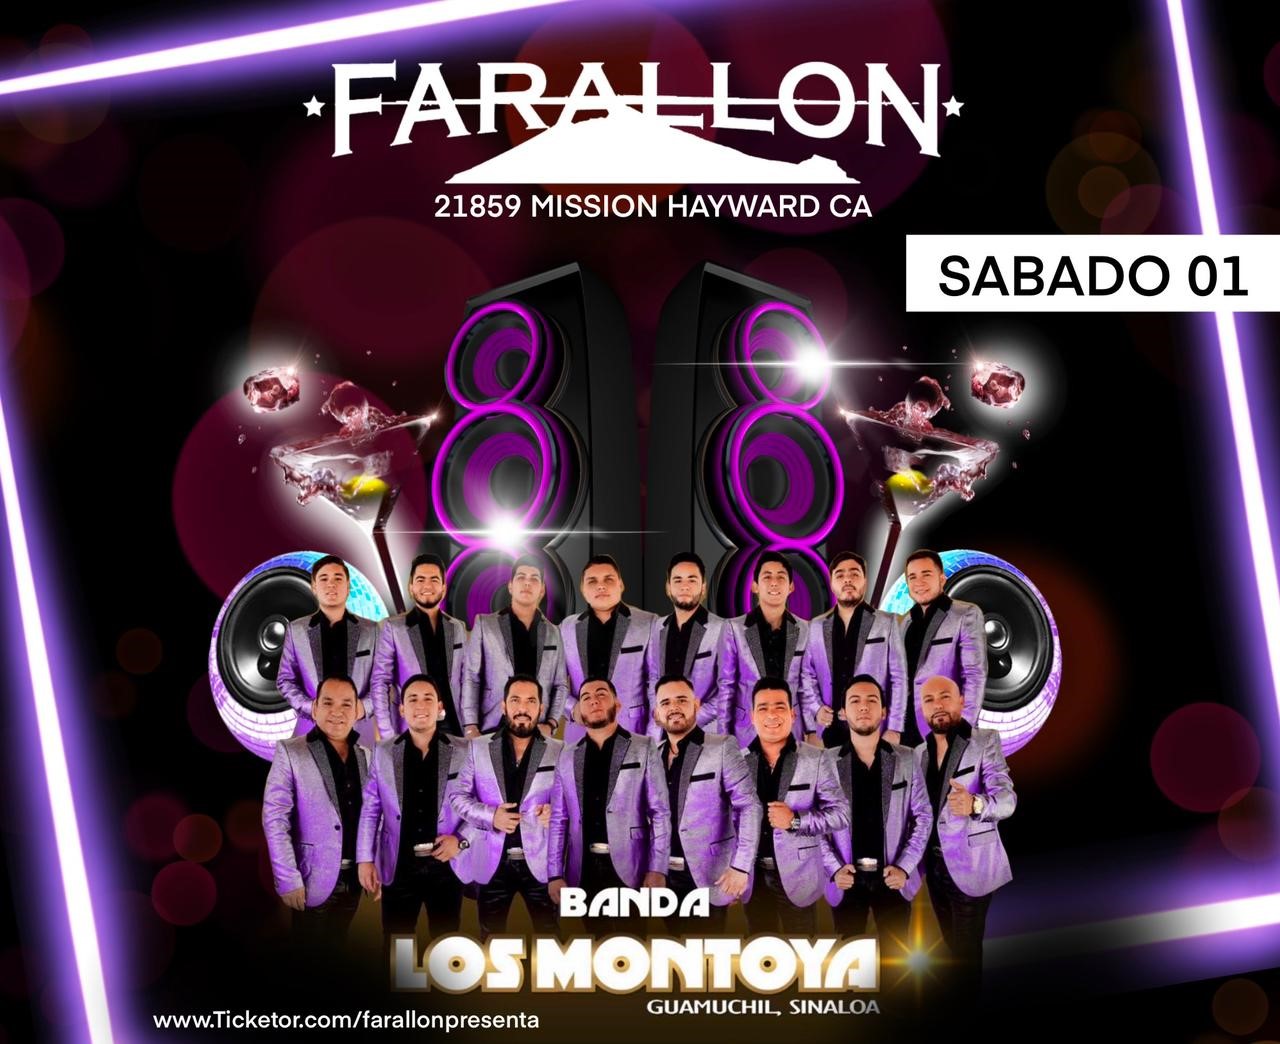 Banda Los Montoya y Nuevo Proyecto  on Oct 01, 20:00@FARALLON - Compra entradas y obtén información enfarallonpresenta farallonpresenta